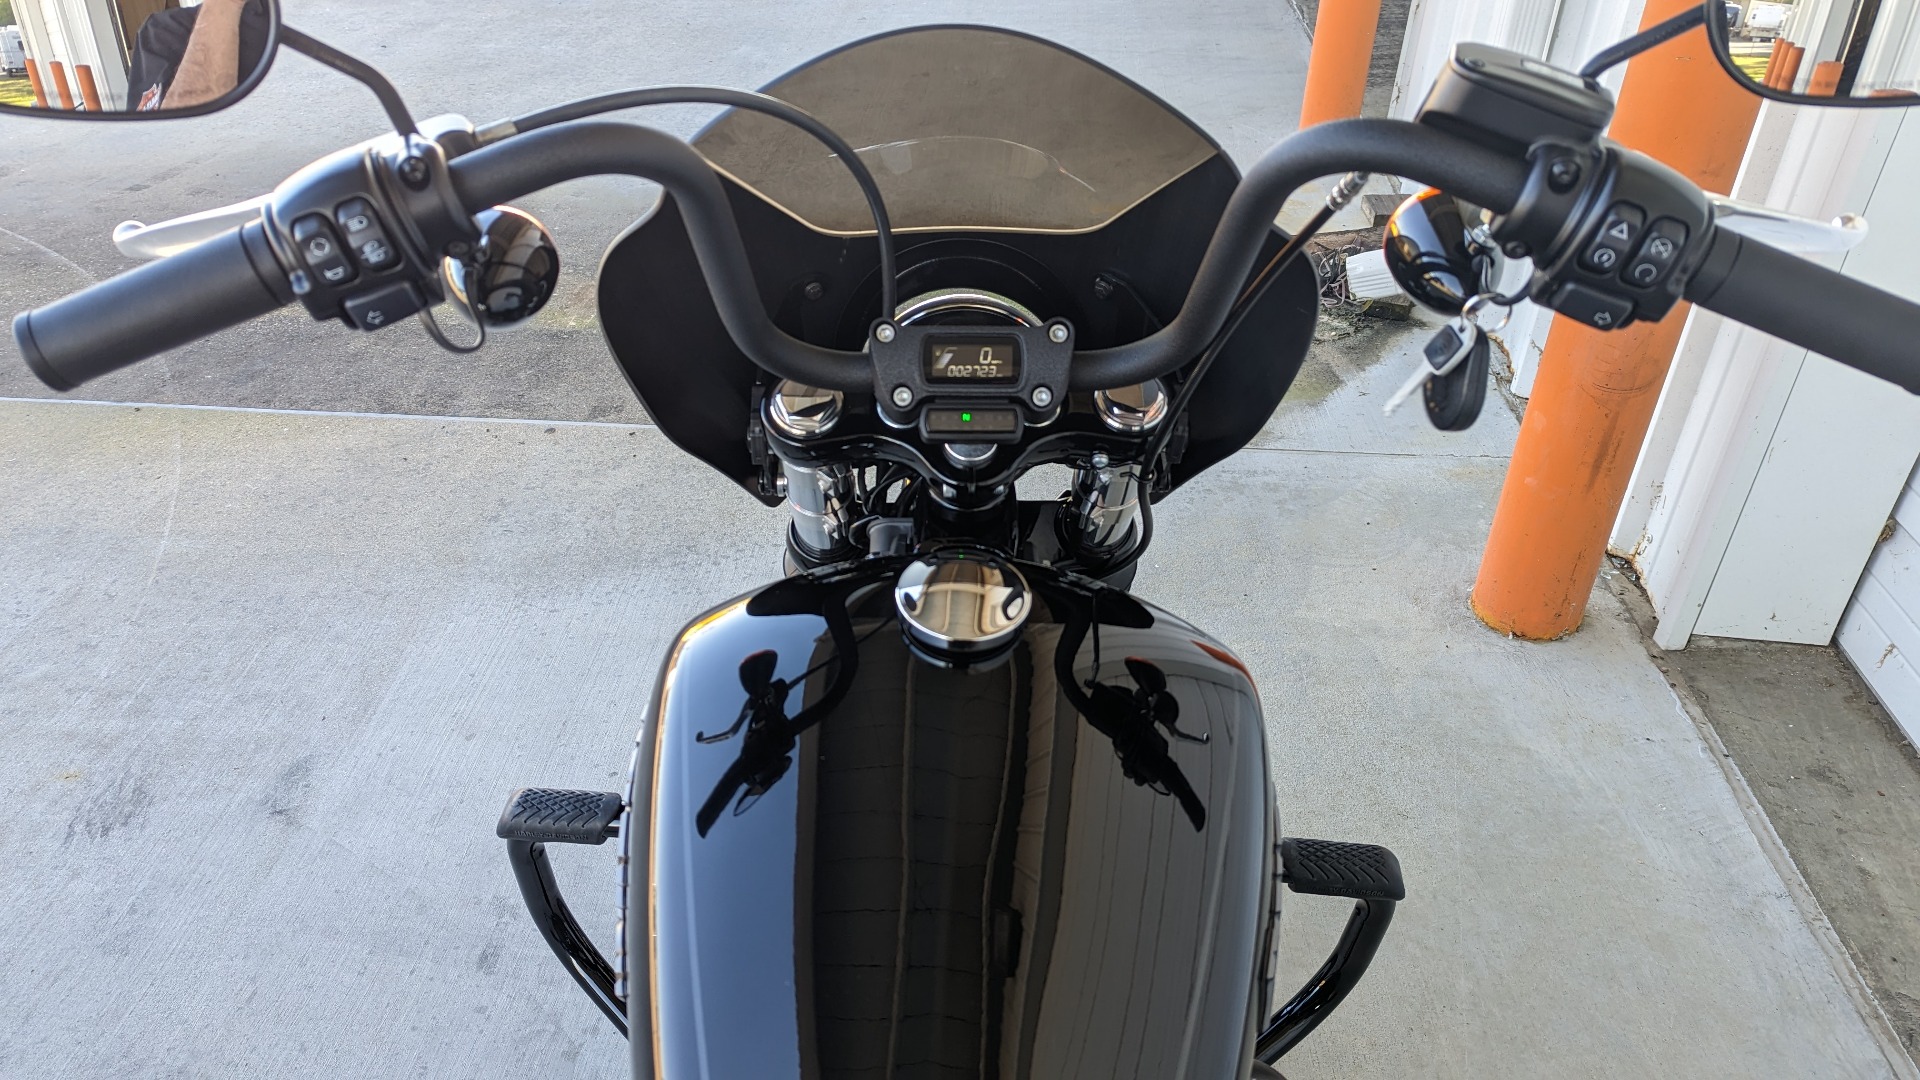 2020 Harley-Davidson Street Bob® in Monroe, Louisiana - Photo 13